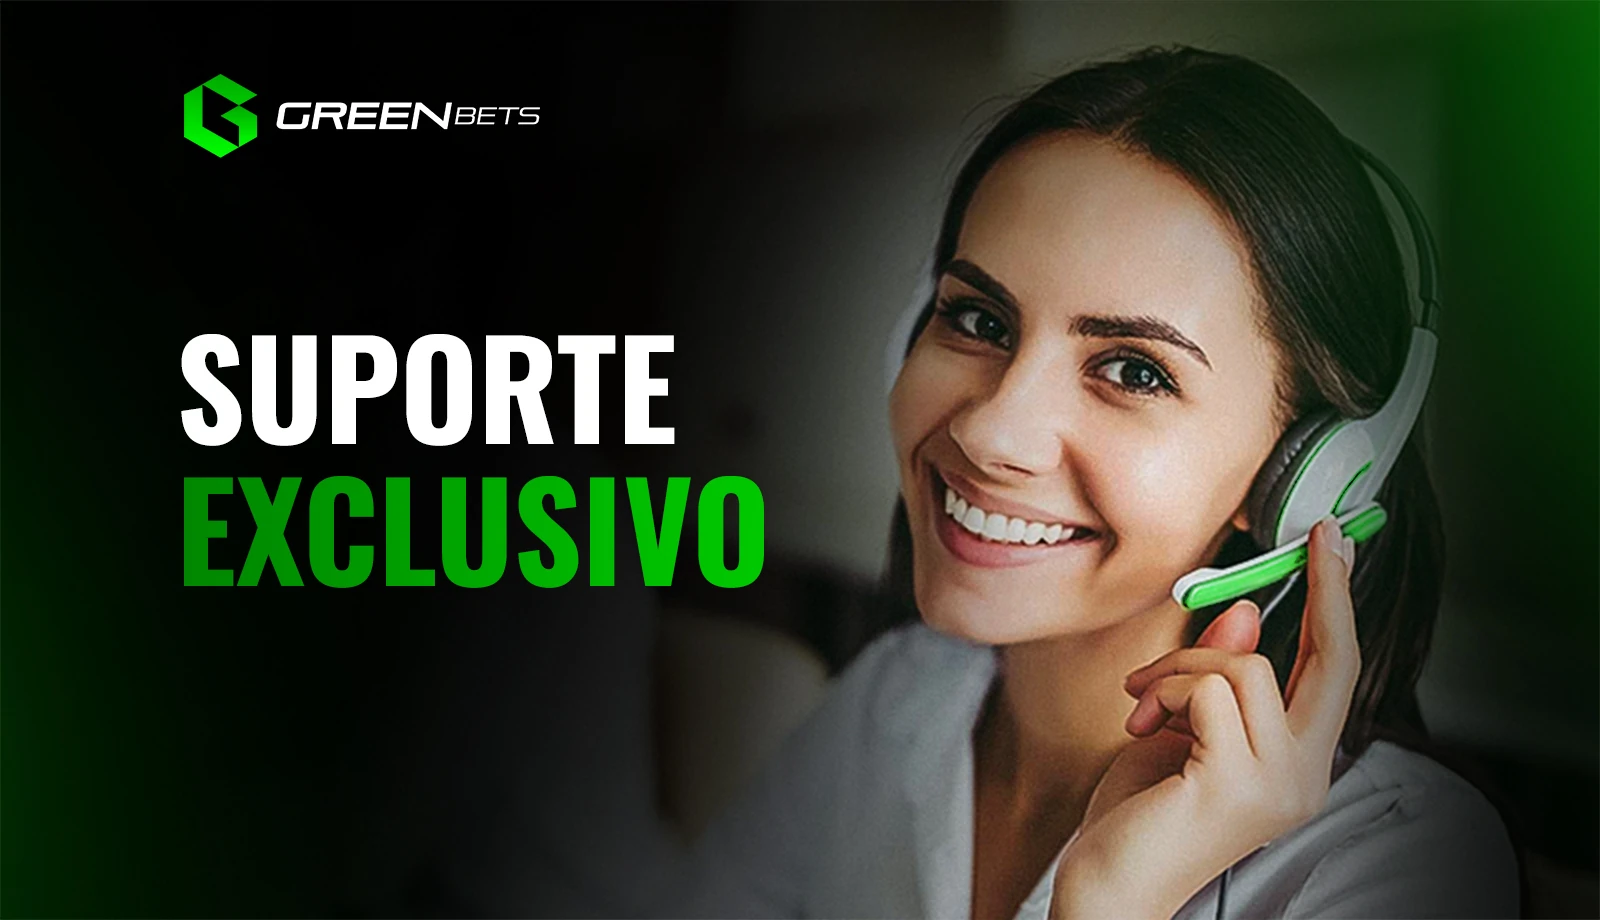 Suporte ao cliente Greenbets, mulher sorrindo usando um headset branco e verde.